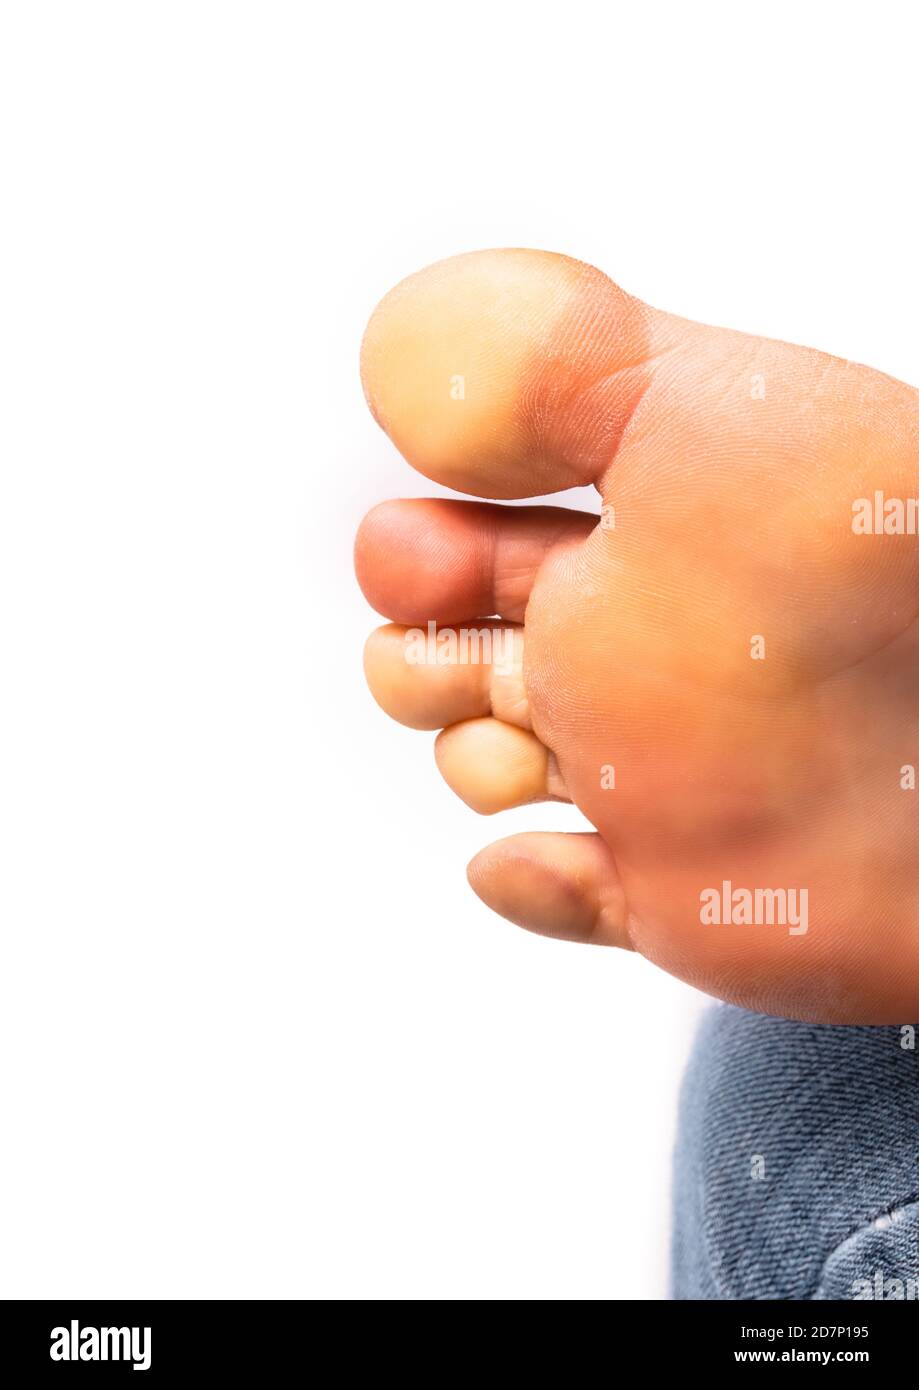 Weiblicher Fuß mit Raynaud-Syndrom, Raynaud-Phänomen oder Raynaud-Erkrankungen. Die Zehen wurden aufgrund des Mangels an Blutfluss weiß (Pallor). Stockfoto